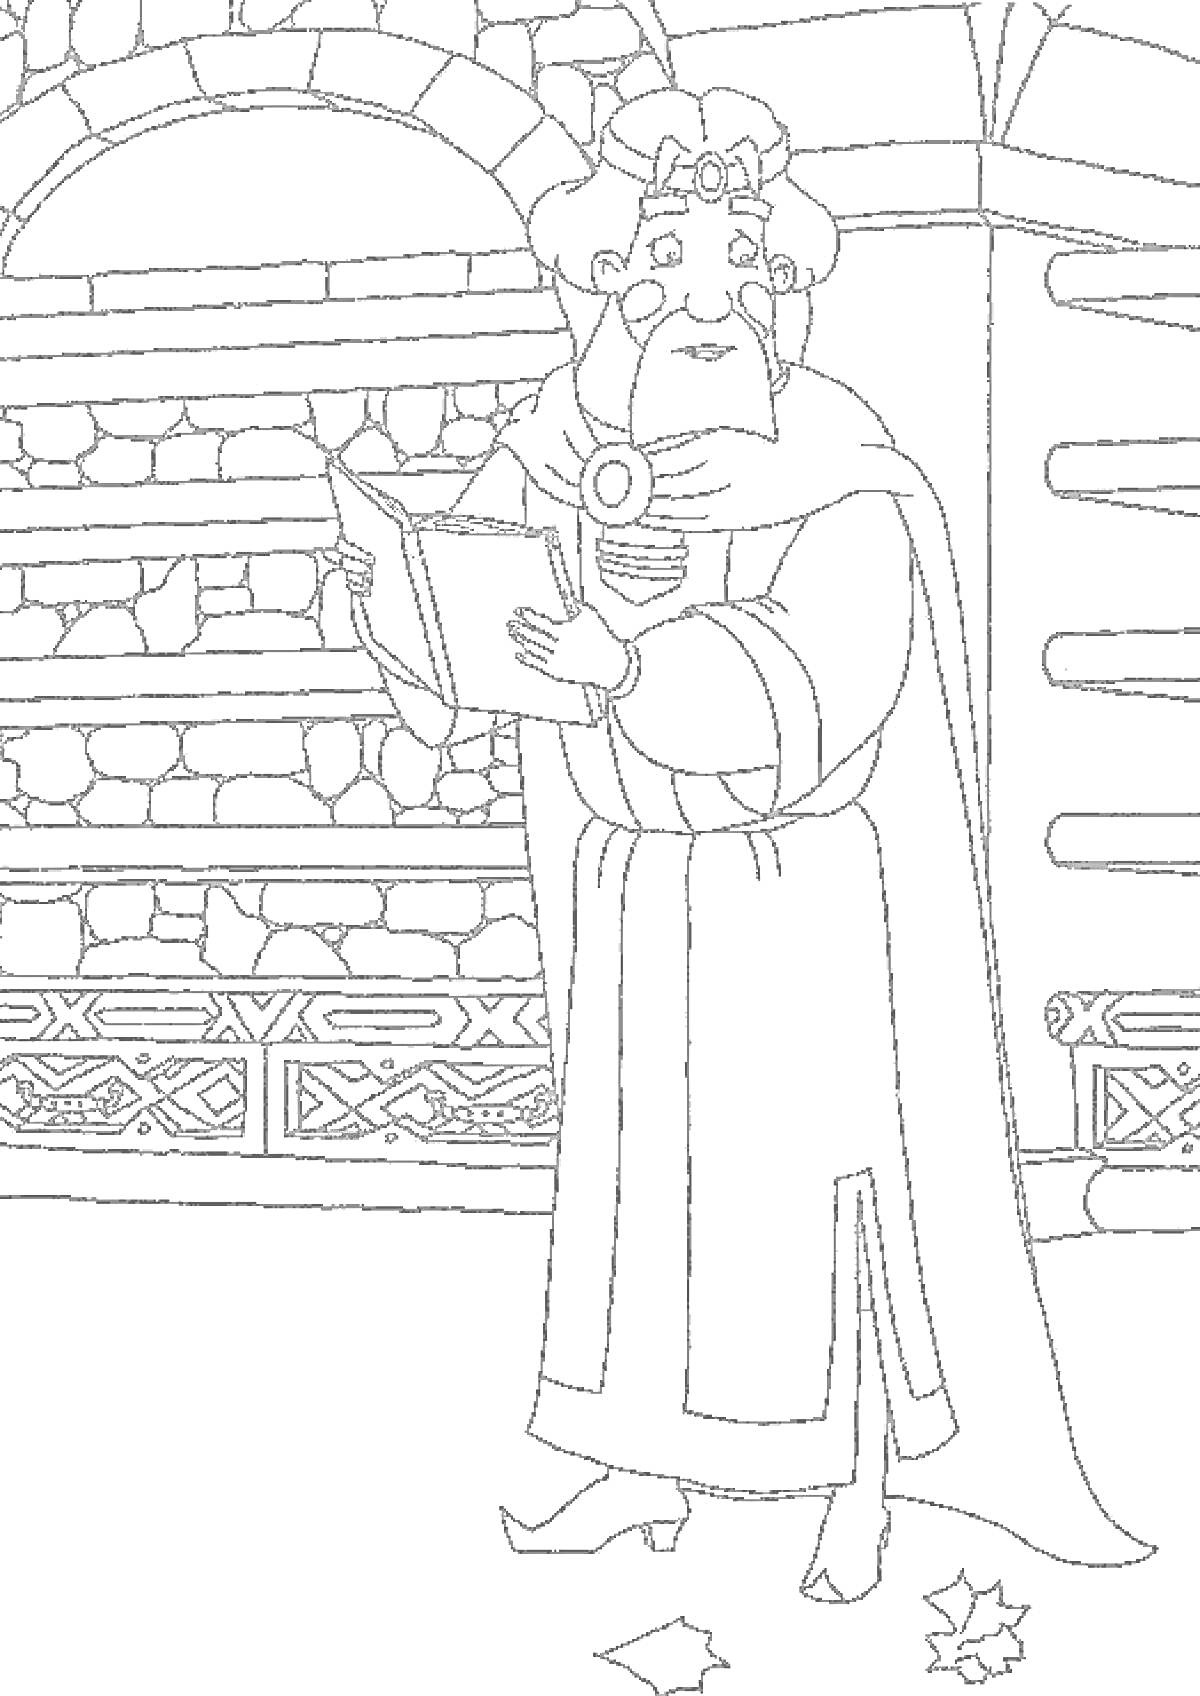 Человек в длинной одежде с книгой в руках, стоящий перед полками, обрамленными кирпичной кладкой, на полу лежат два листа бумаги.